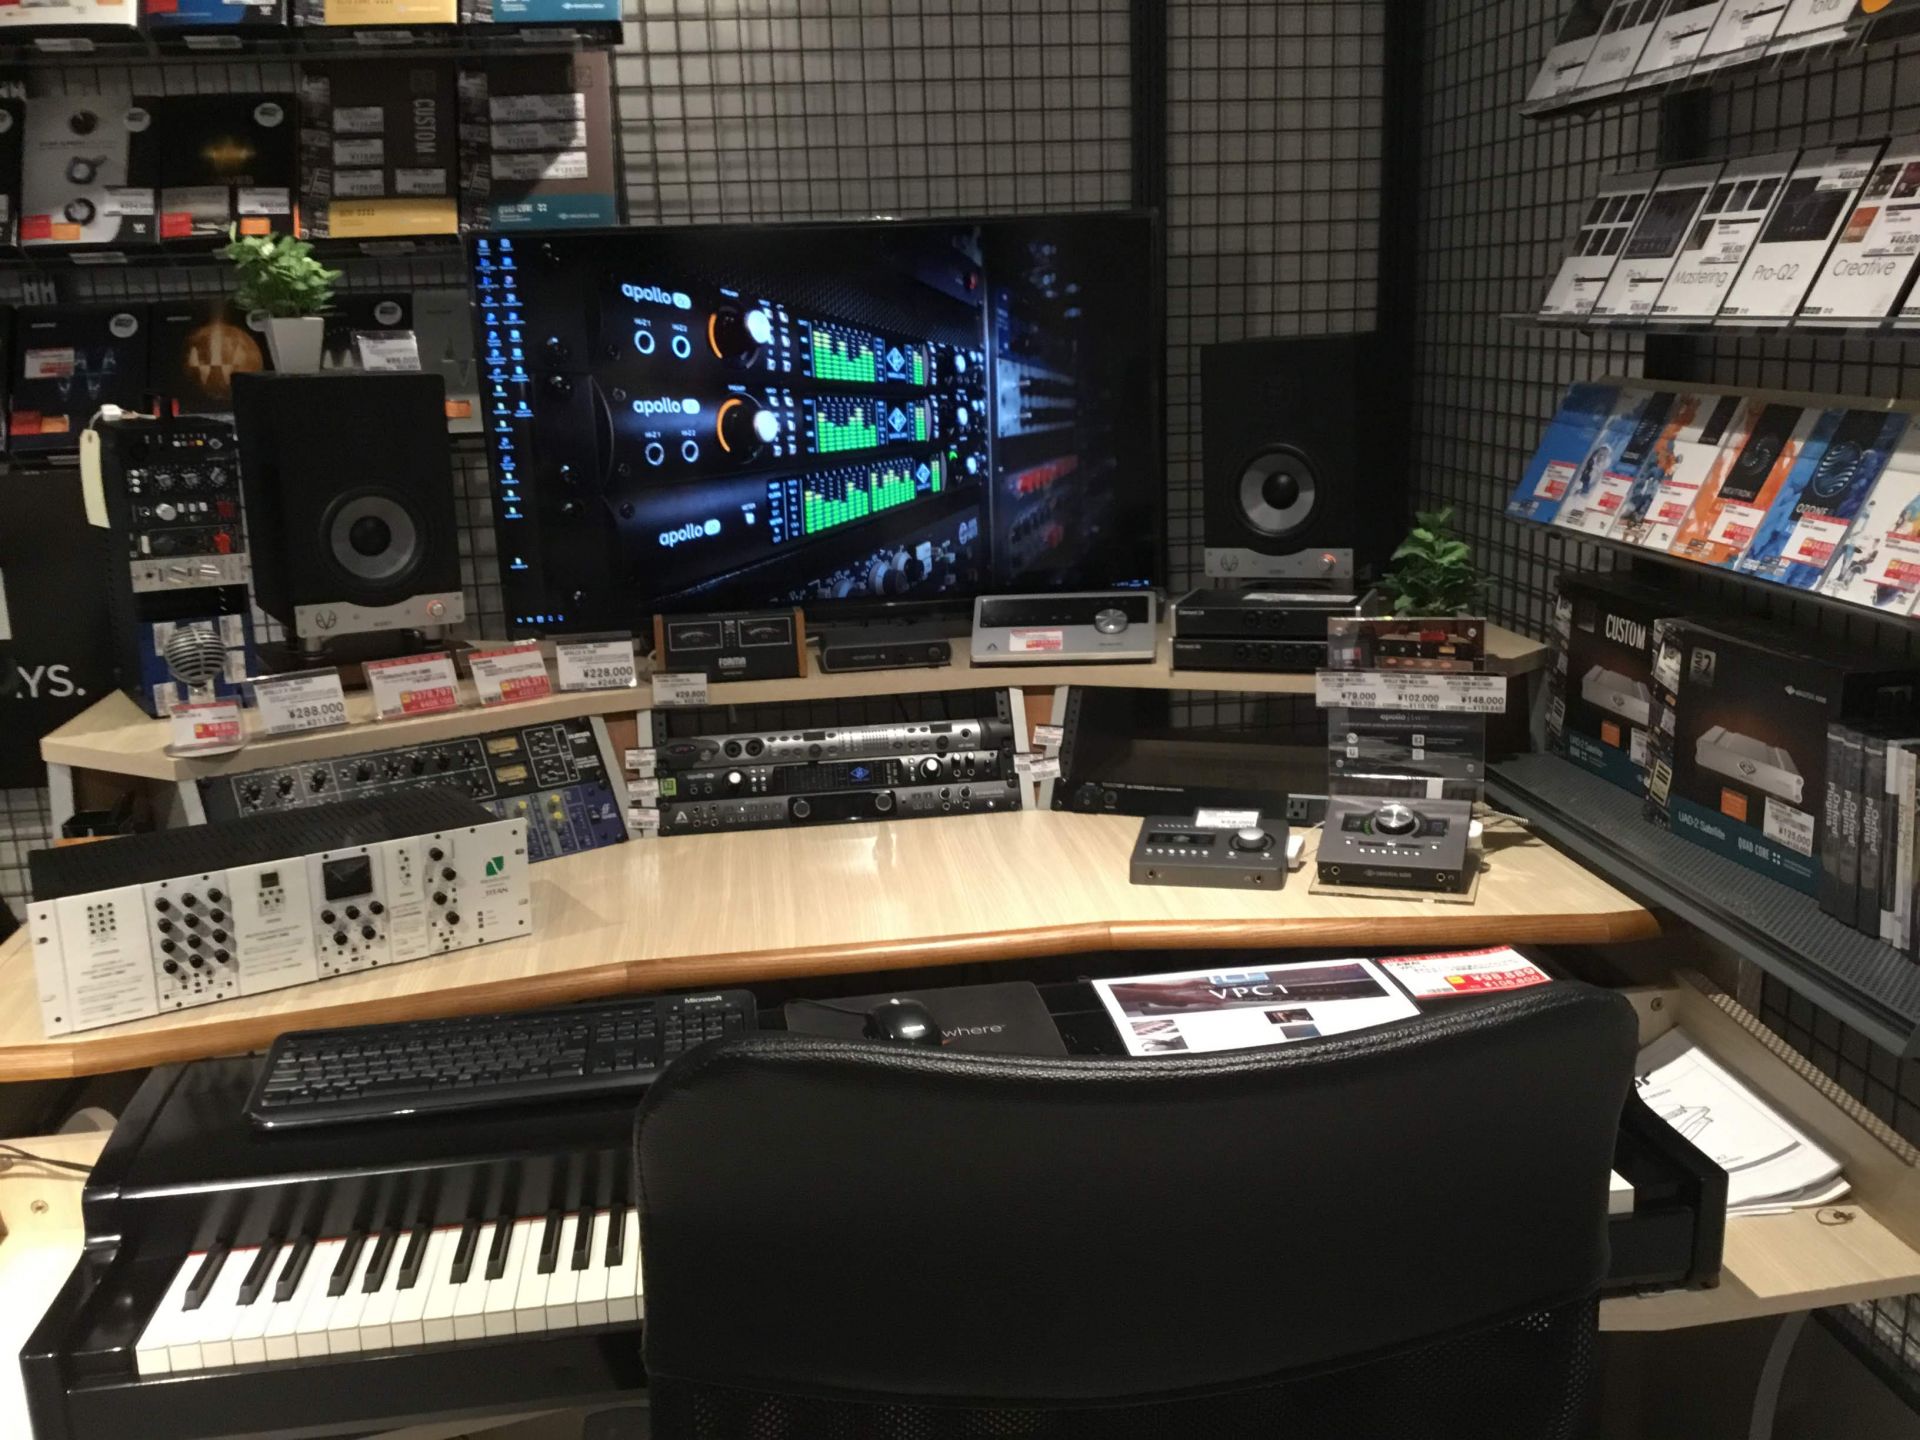 *デジタル楽器なら島村楽器梅田ロフト店にお任せ！ 島村楽器梅田ロフト店では、DTM・DJ・PA・シンセサイザーと数多くのデジタル楽器を取り扱っています。 店頭でお試しいただける環境も用意しているので、気になるソフトウェア、ハードウェアがあるなら一度ご来店ください！ 2018年には店舗の改装を機に、デ […]